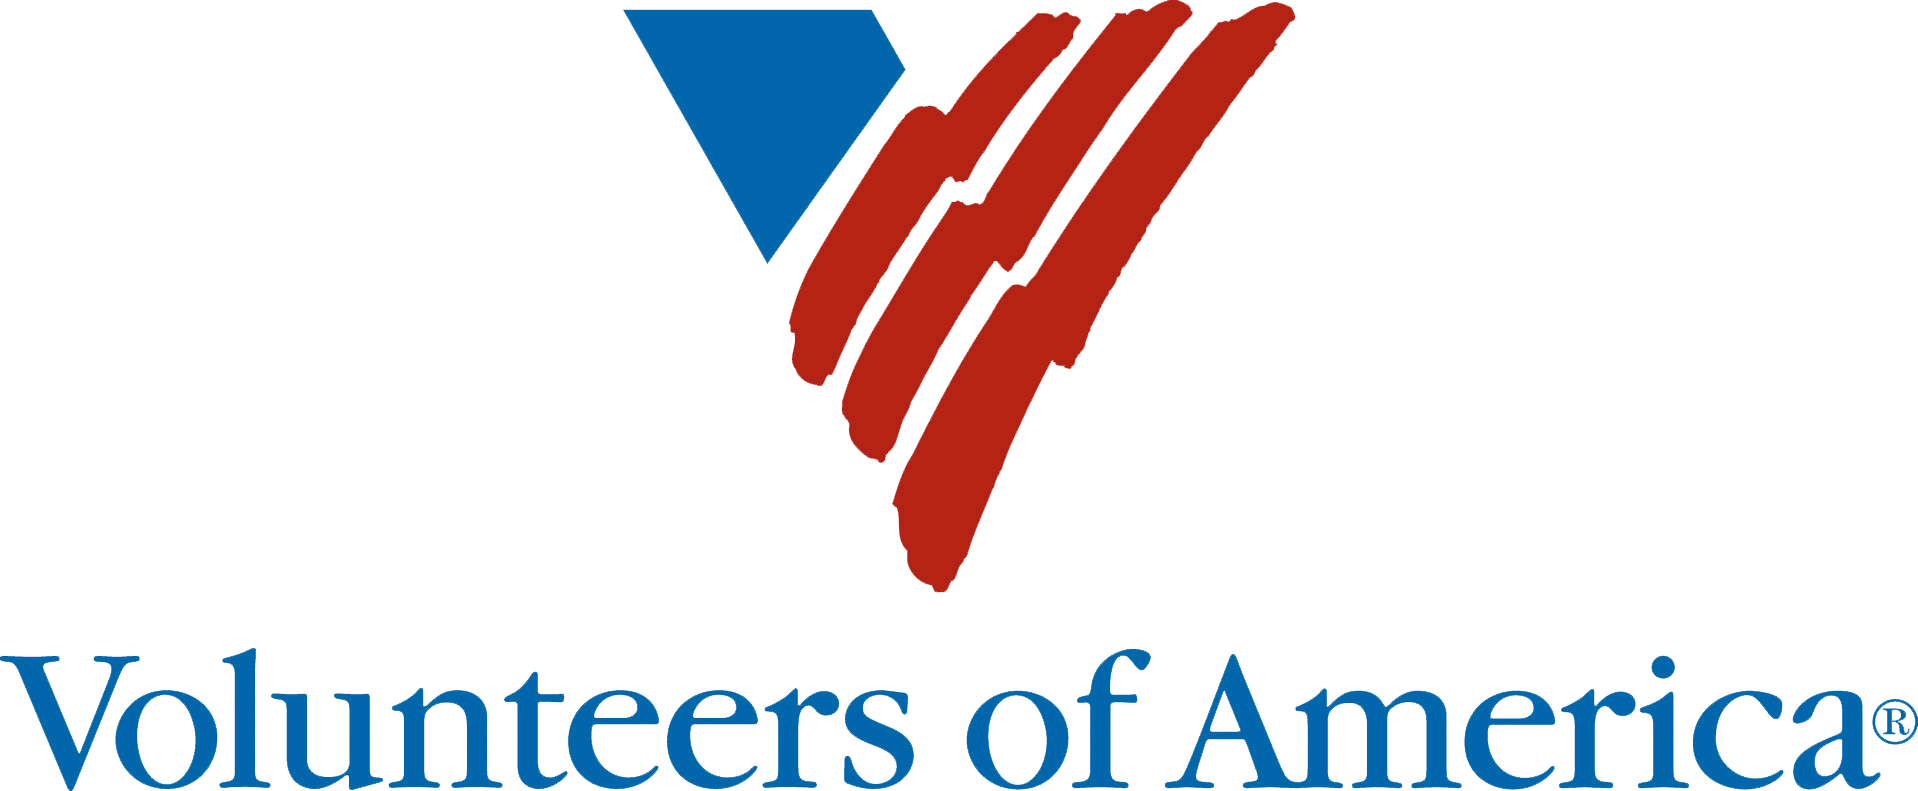 volunteers-of-america-logo.png